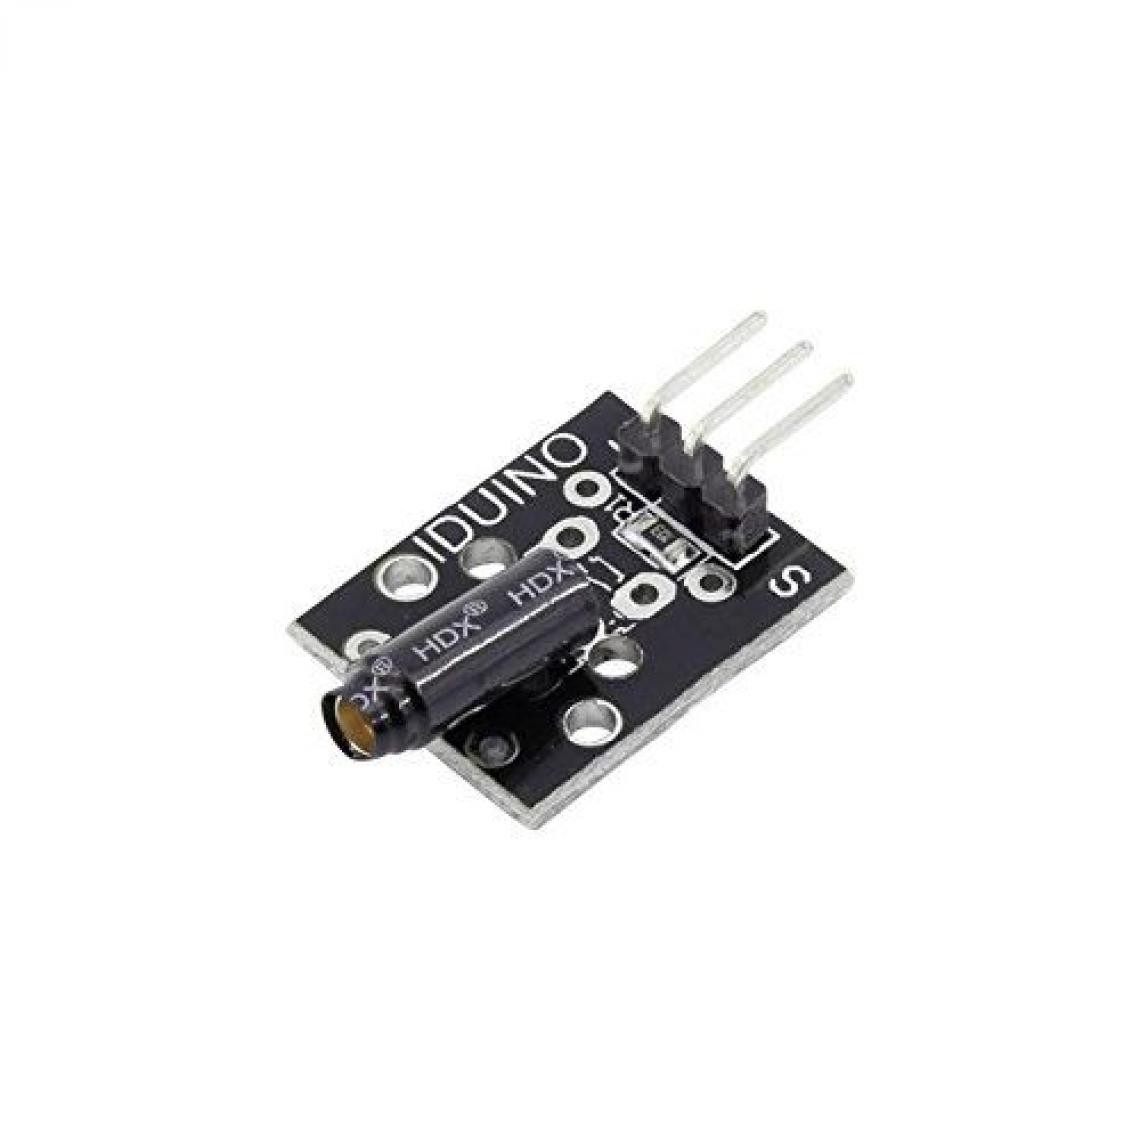 Inconnu - Capteur de vibration Iduino 1485326 connecteur mâle 1 pc(s) - Autres équipements modulaires